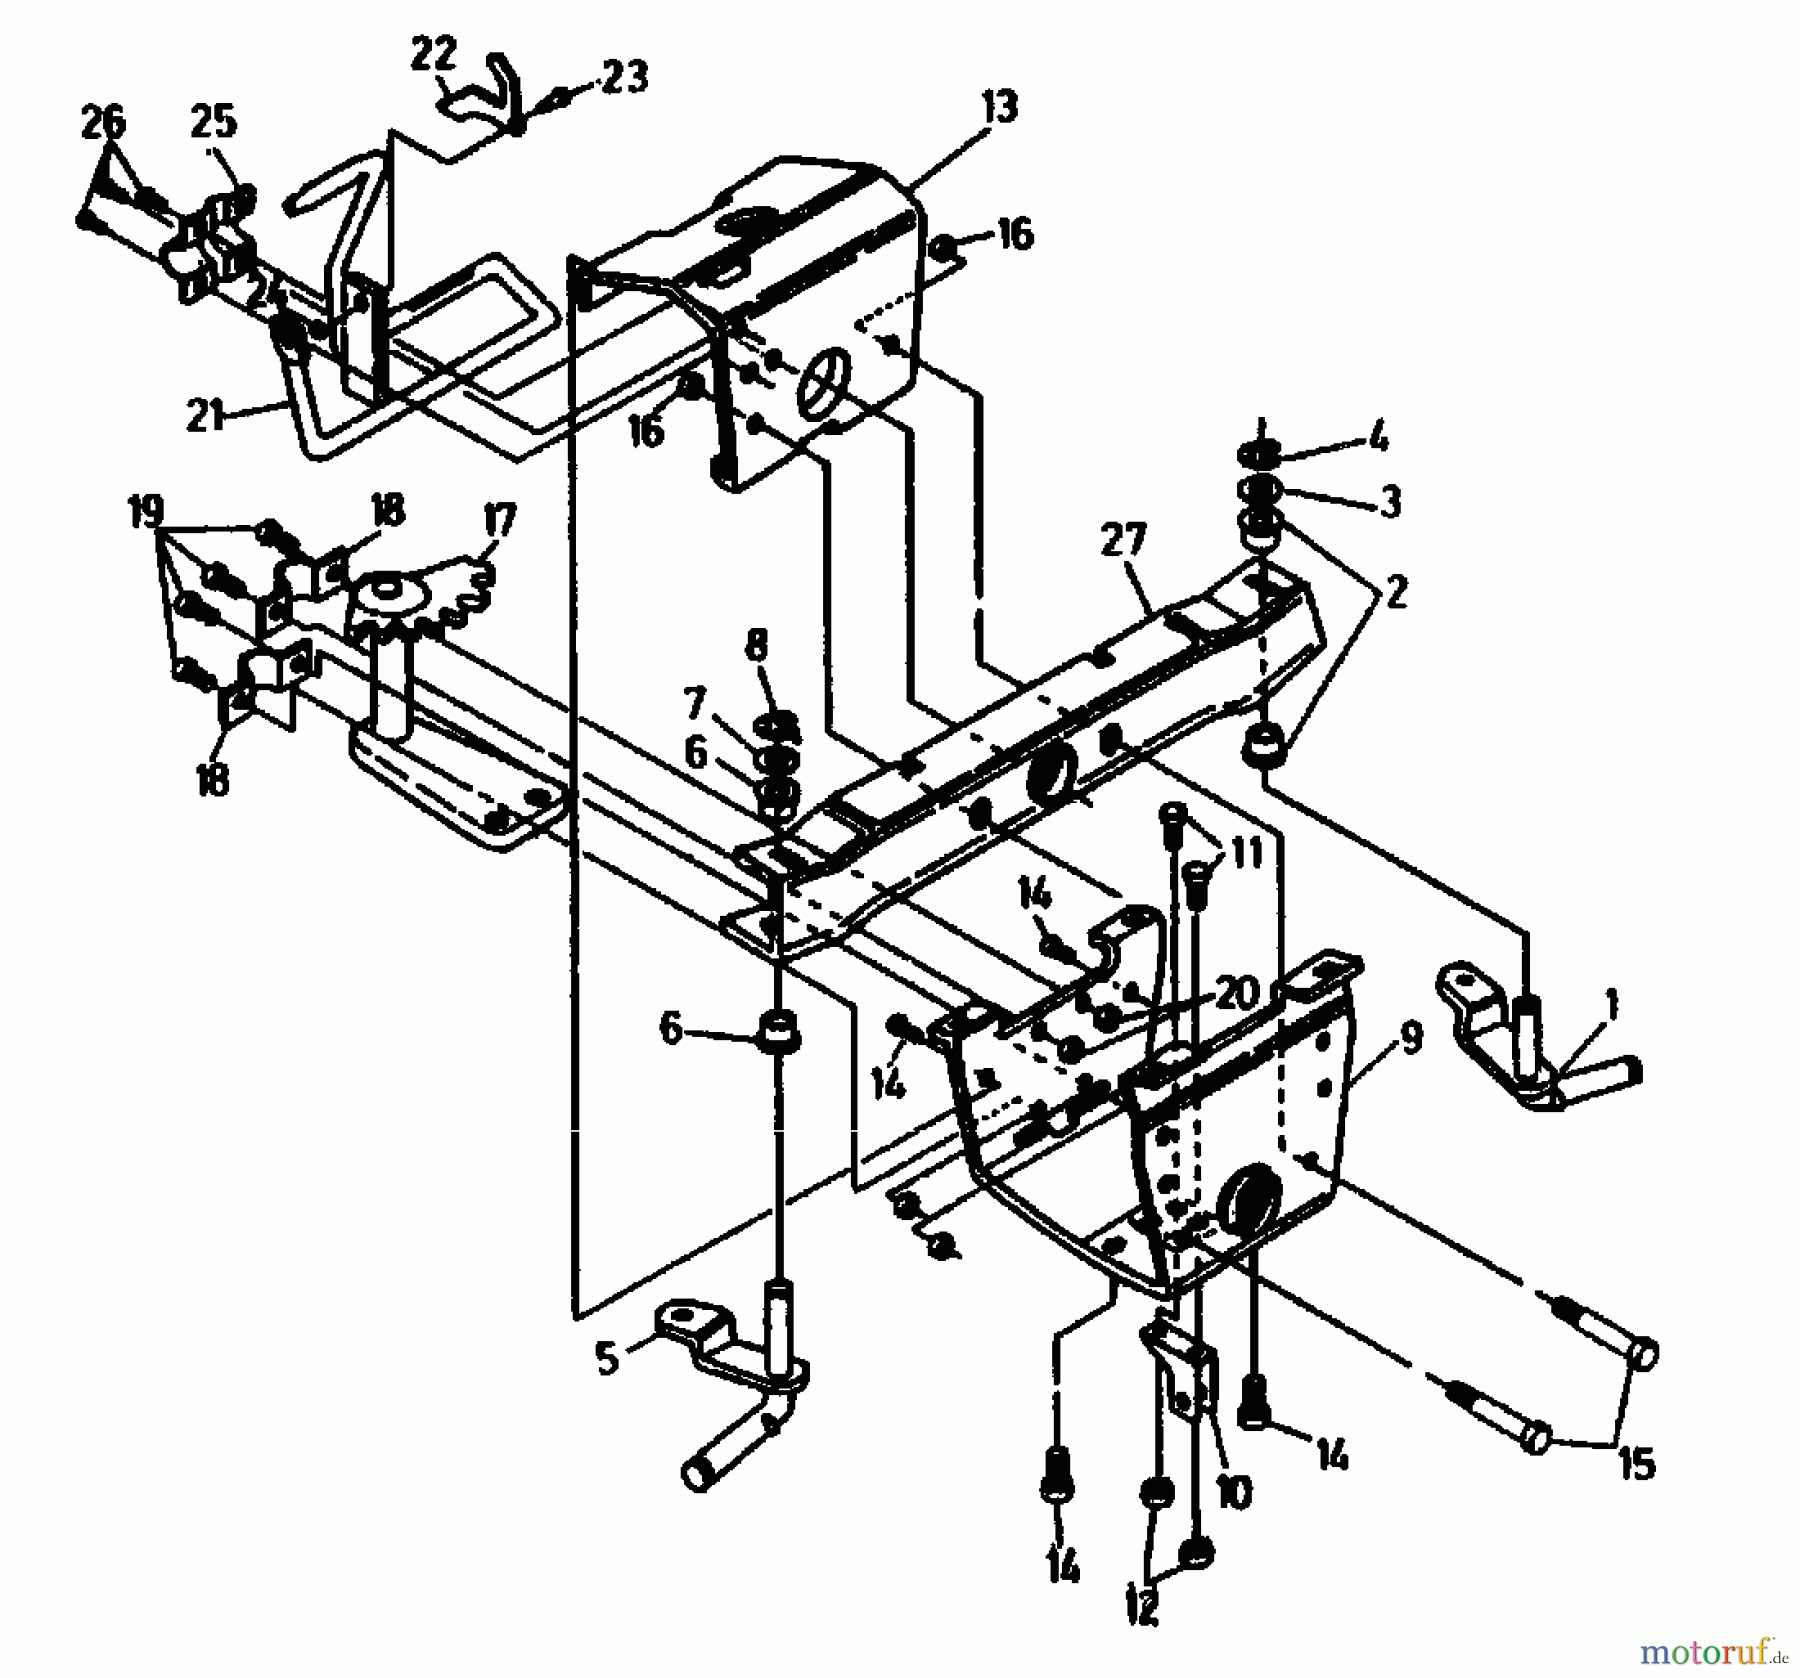  Gutbrod Rasentraktoren ASB 90-10 04015.01  (1991) Vorderachse